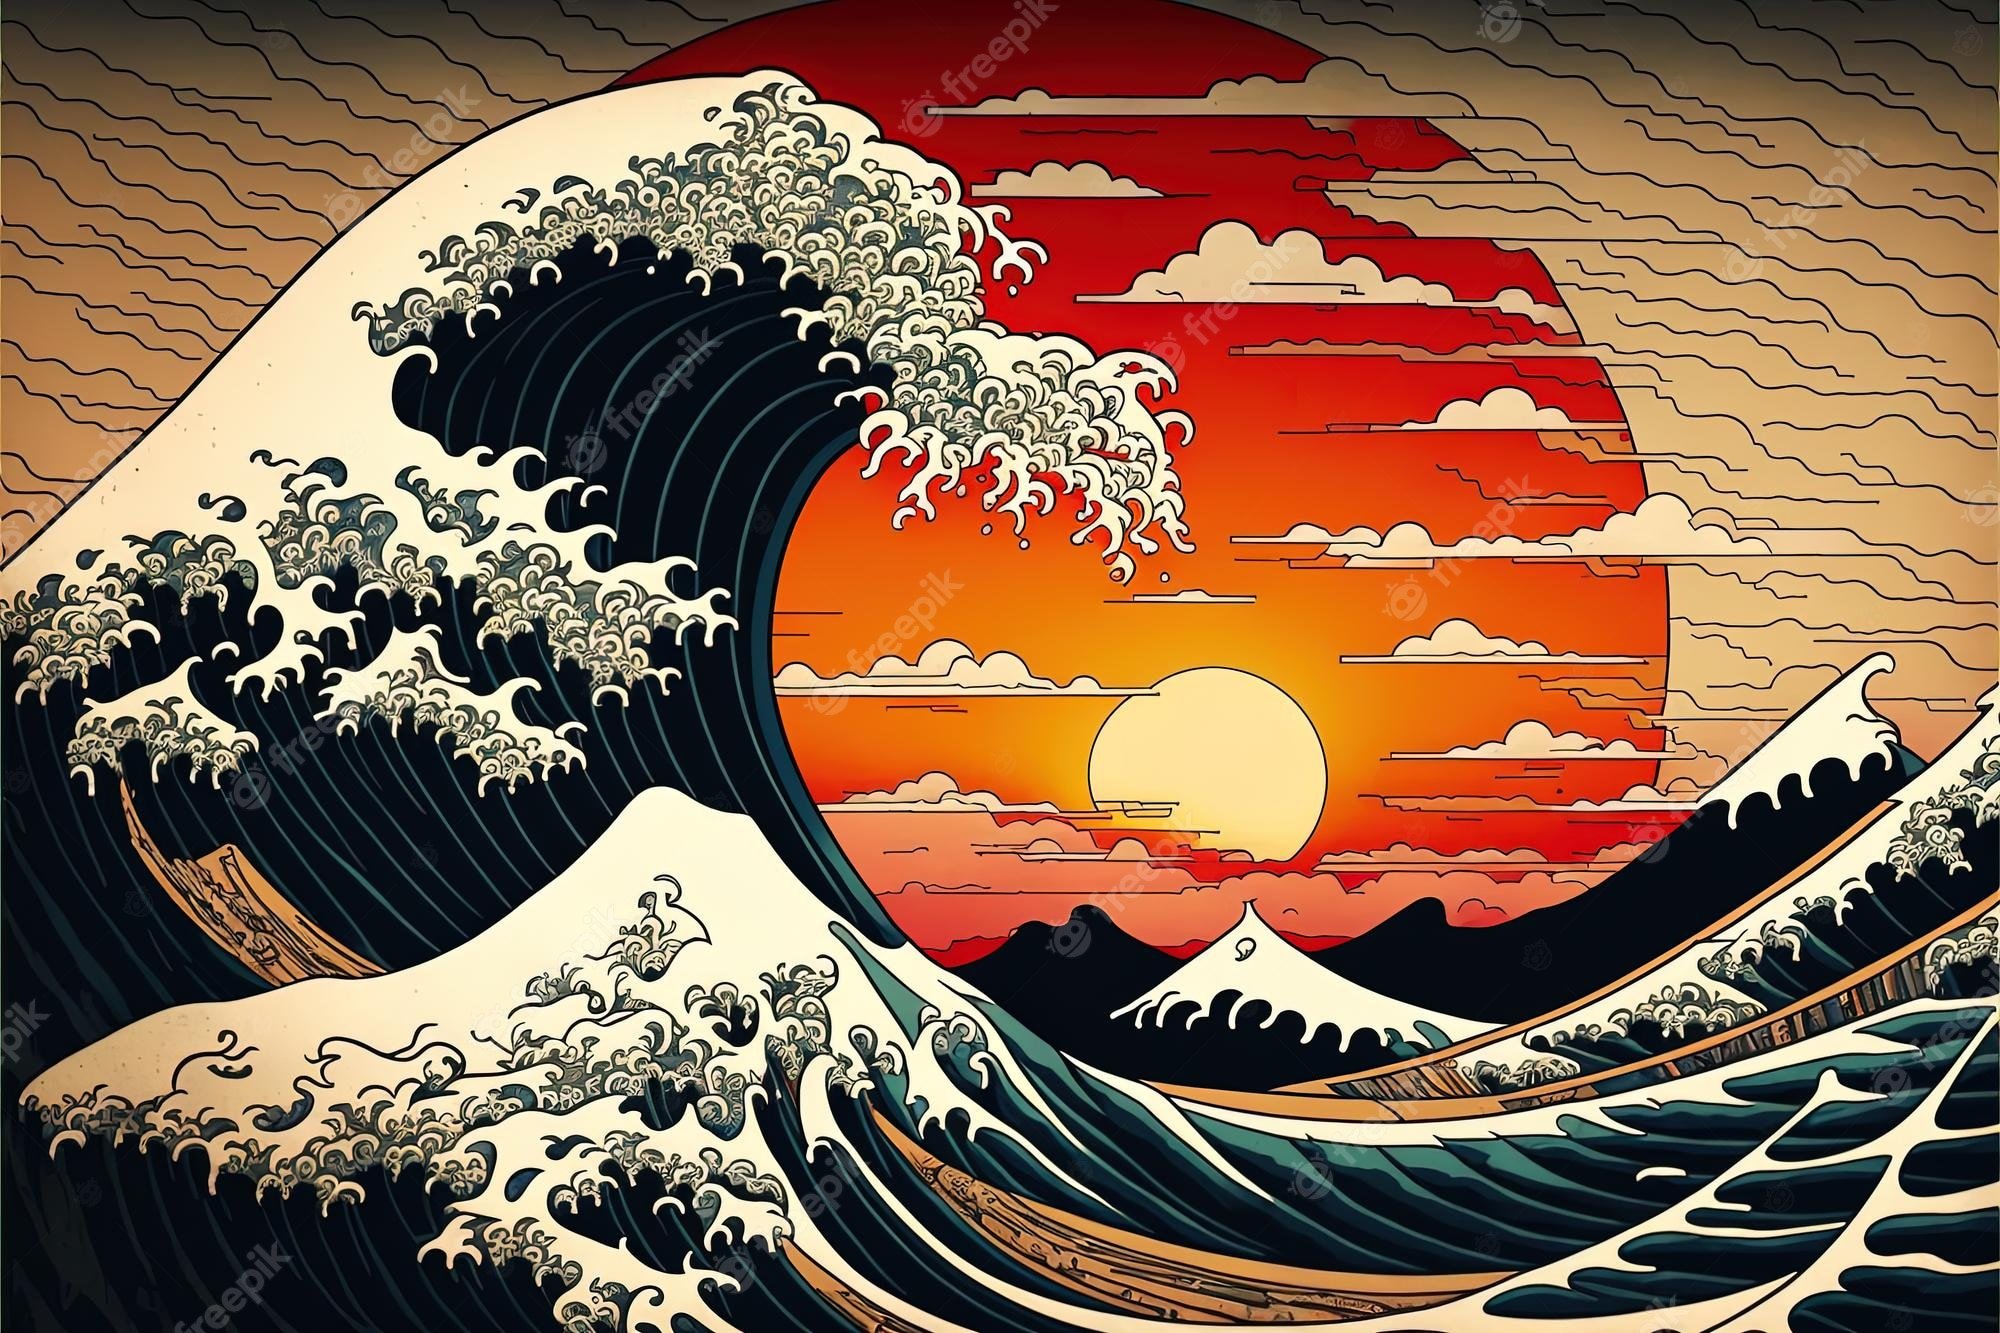 نقاشی تولید شده توسط AI هوش مصنوعی با طرح موج بزرگ اقیانوس